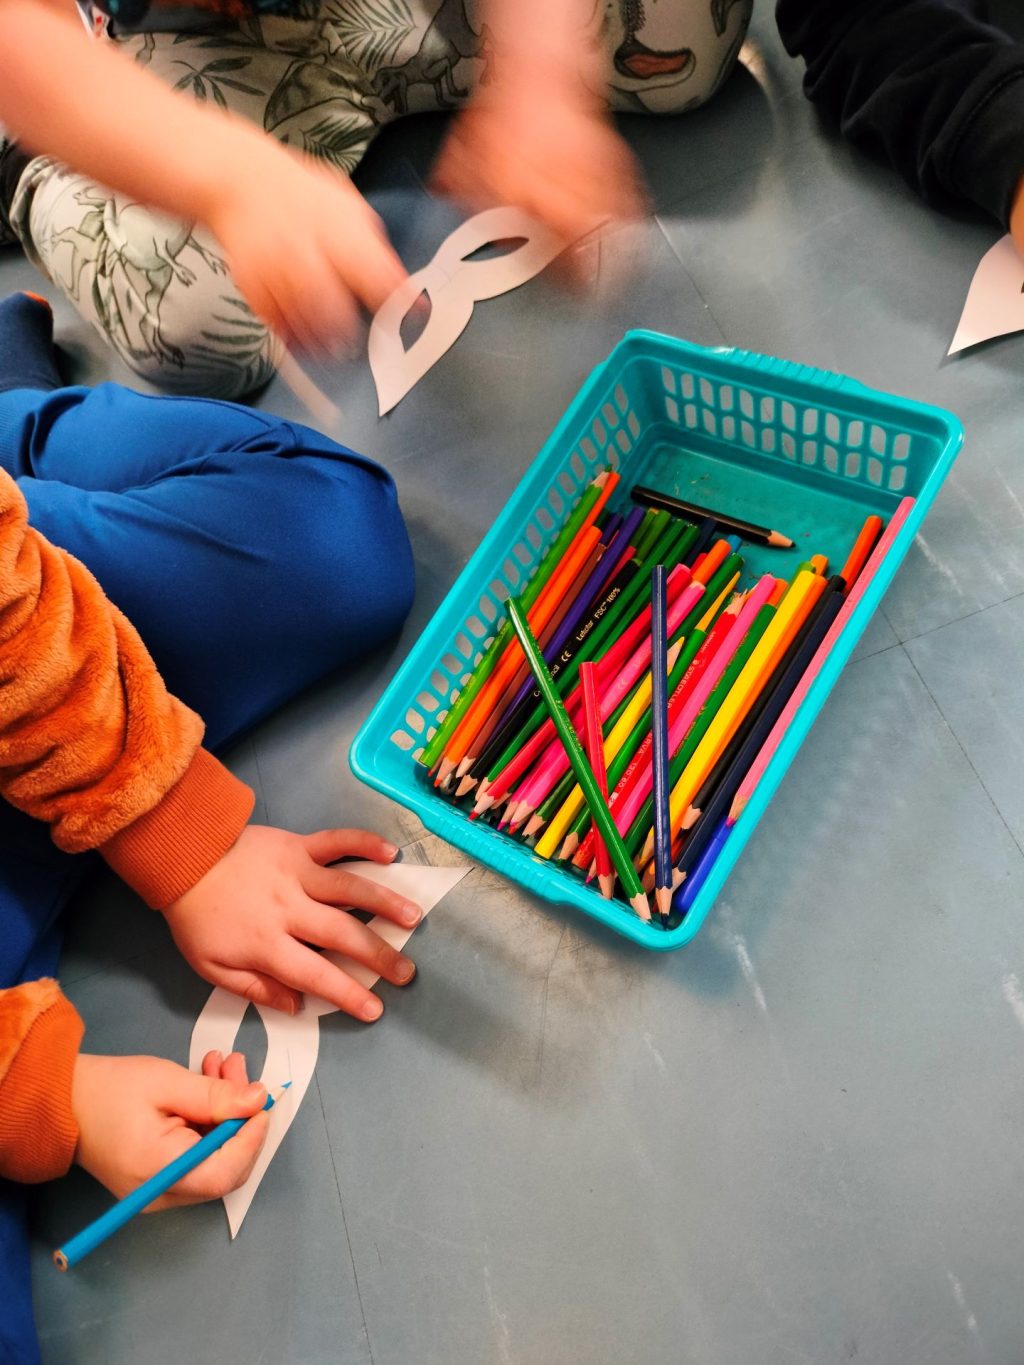 Keskellä värikynälaatikko. Reunassa kahden lapsen kädet värittämässä paperista leikattua maskia.